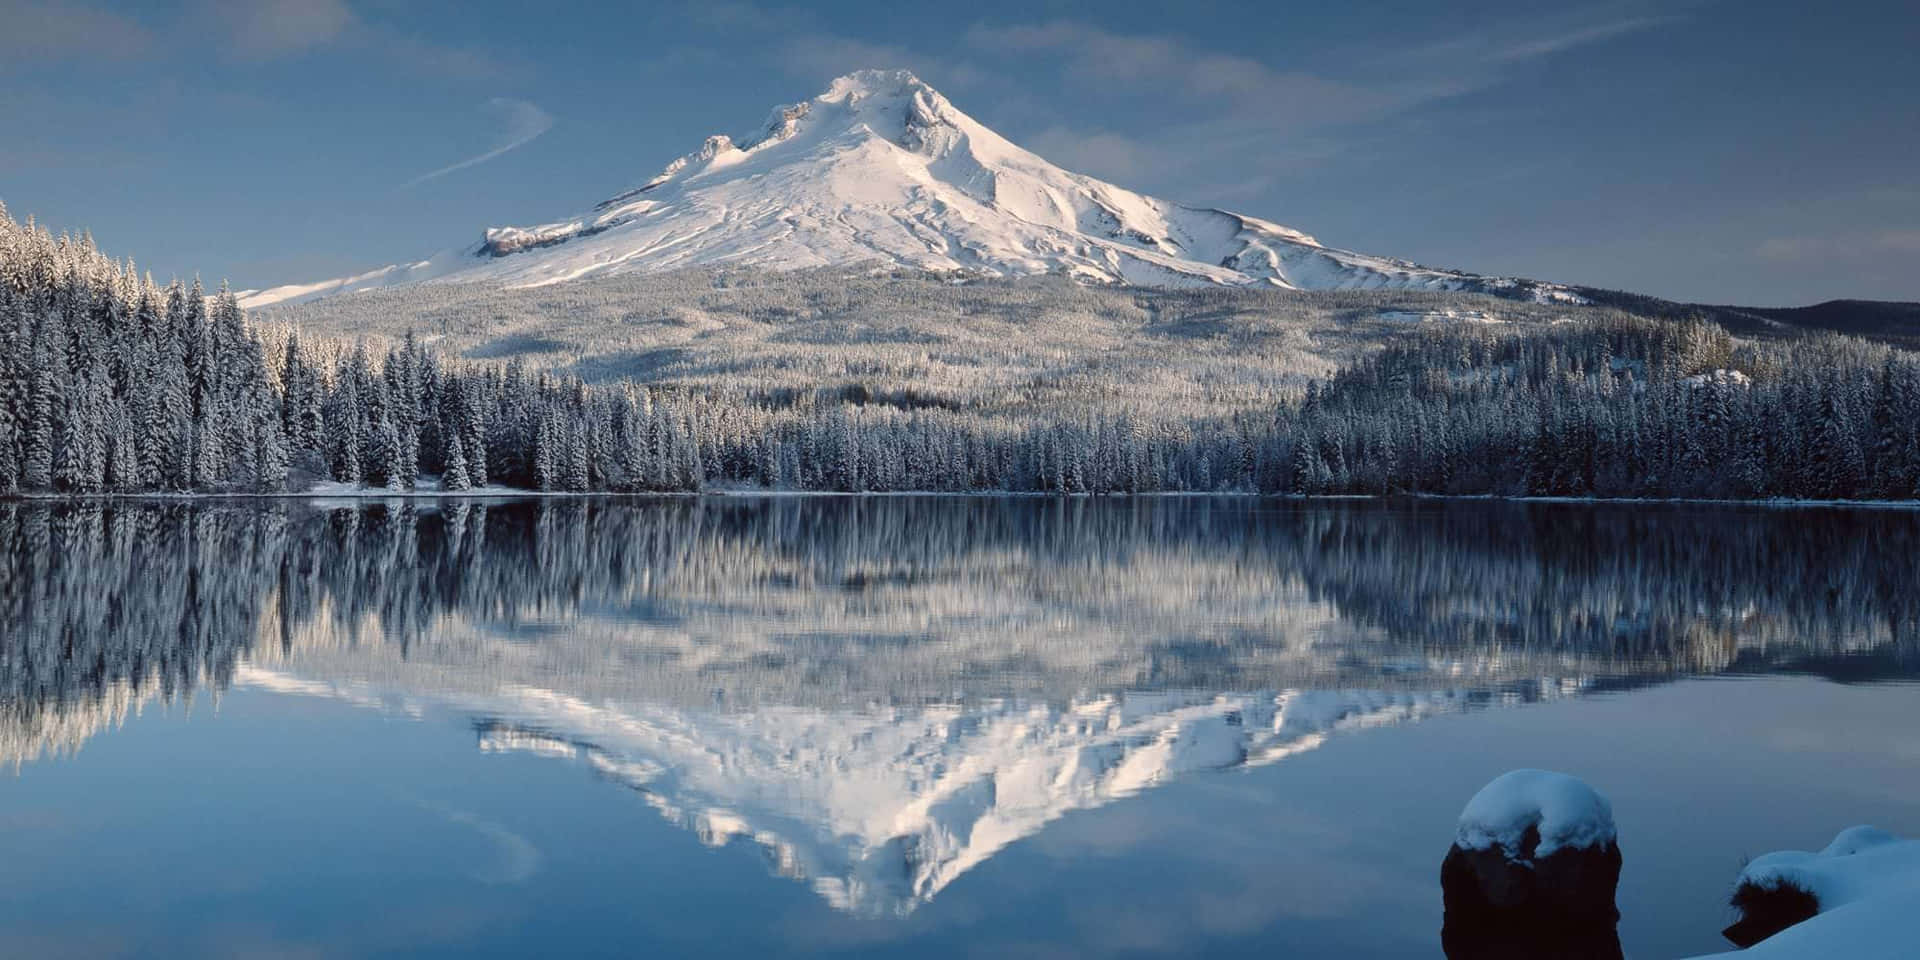 Ståtligtreser Sig – Mount Hood, Oregon